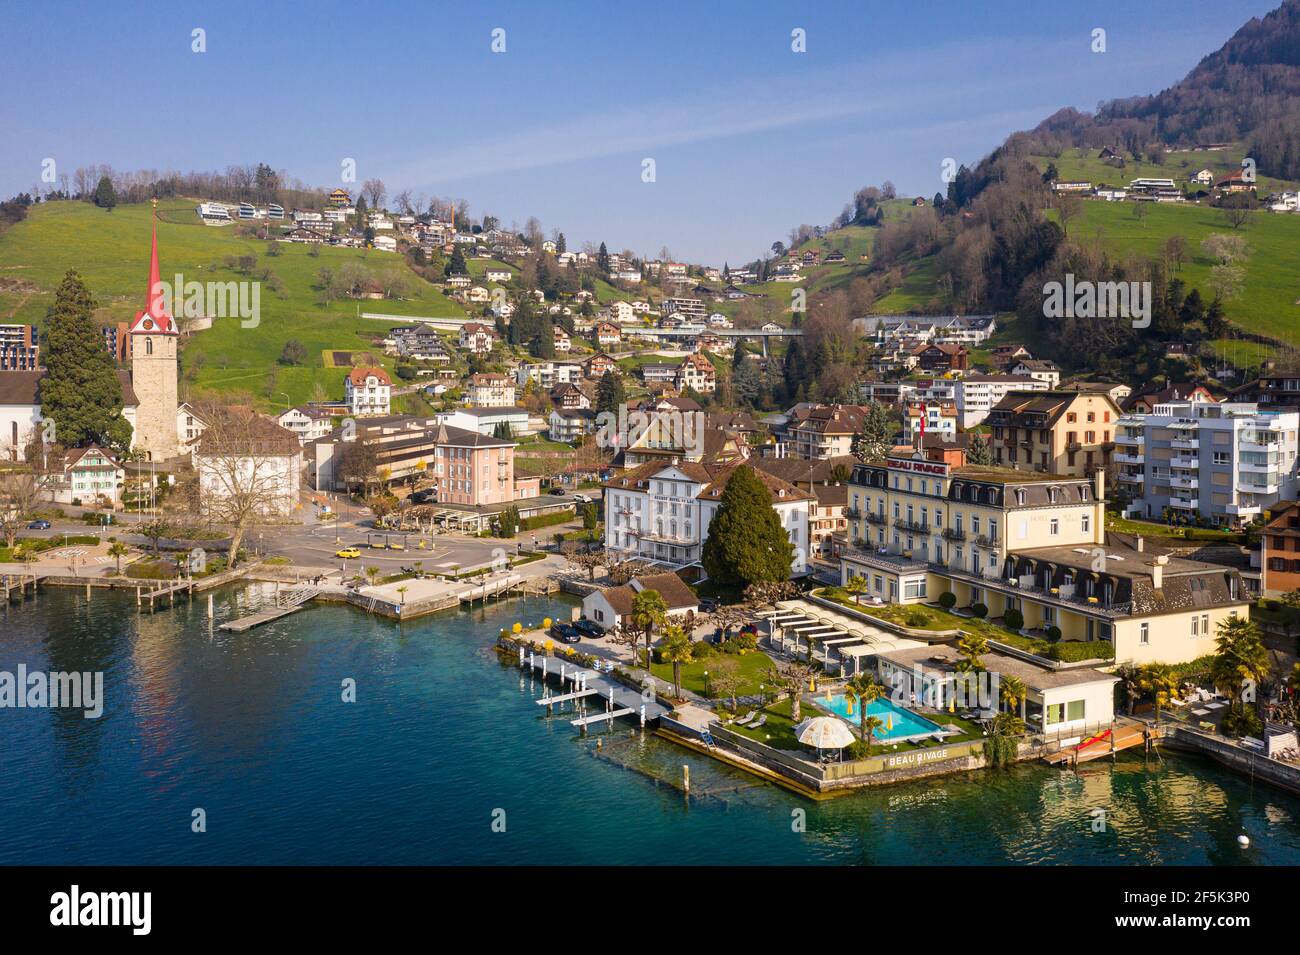 Weggis, Svizzera - Marzo 28 2020: Vista aerea di vari hotel di lusso come il Beau Rivage e l'Hotel du Lac che si trova sulla riva del lago Foto Stock